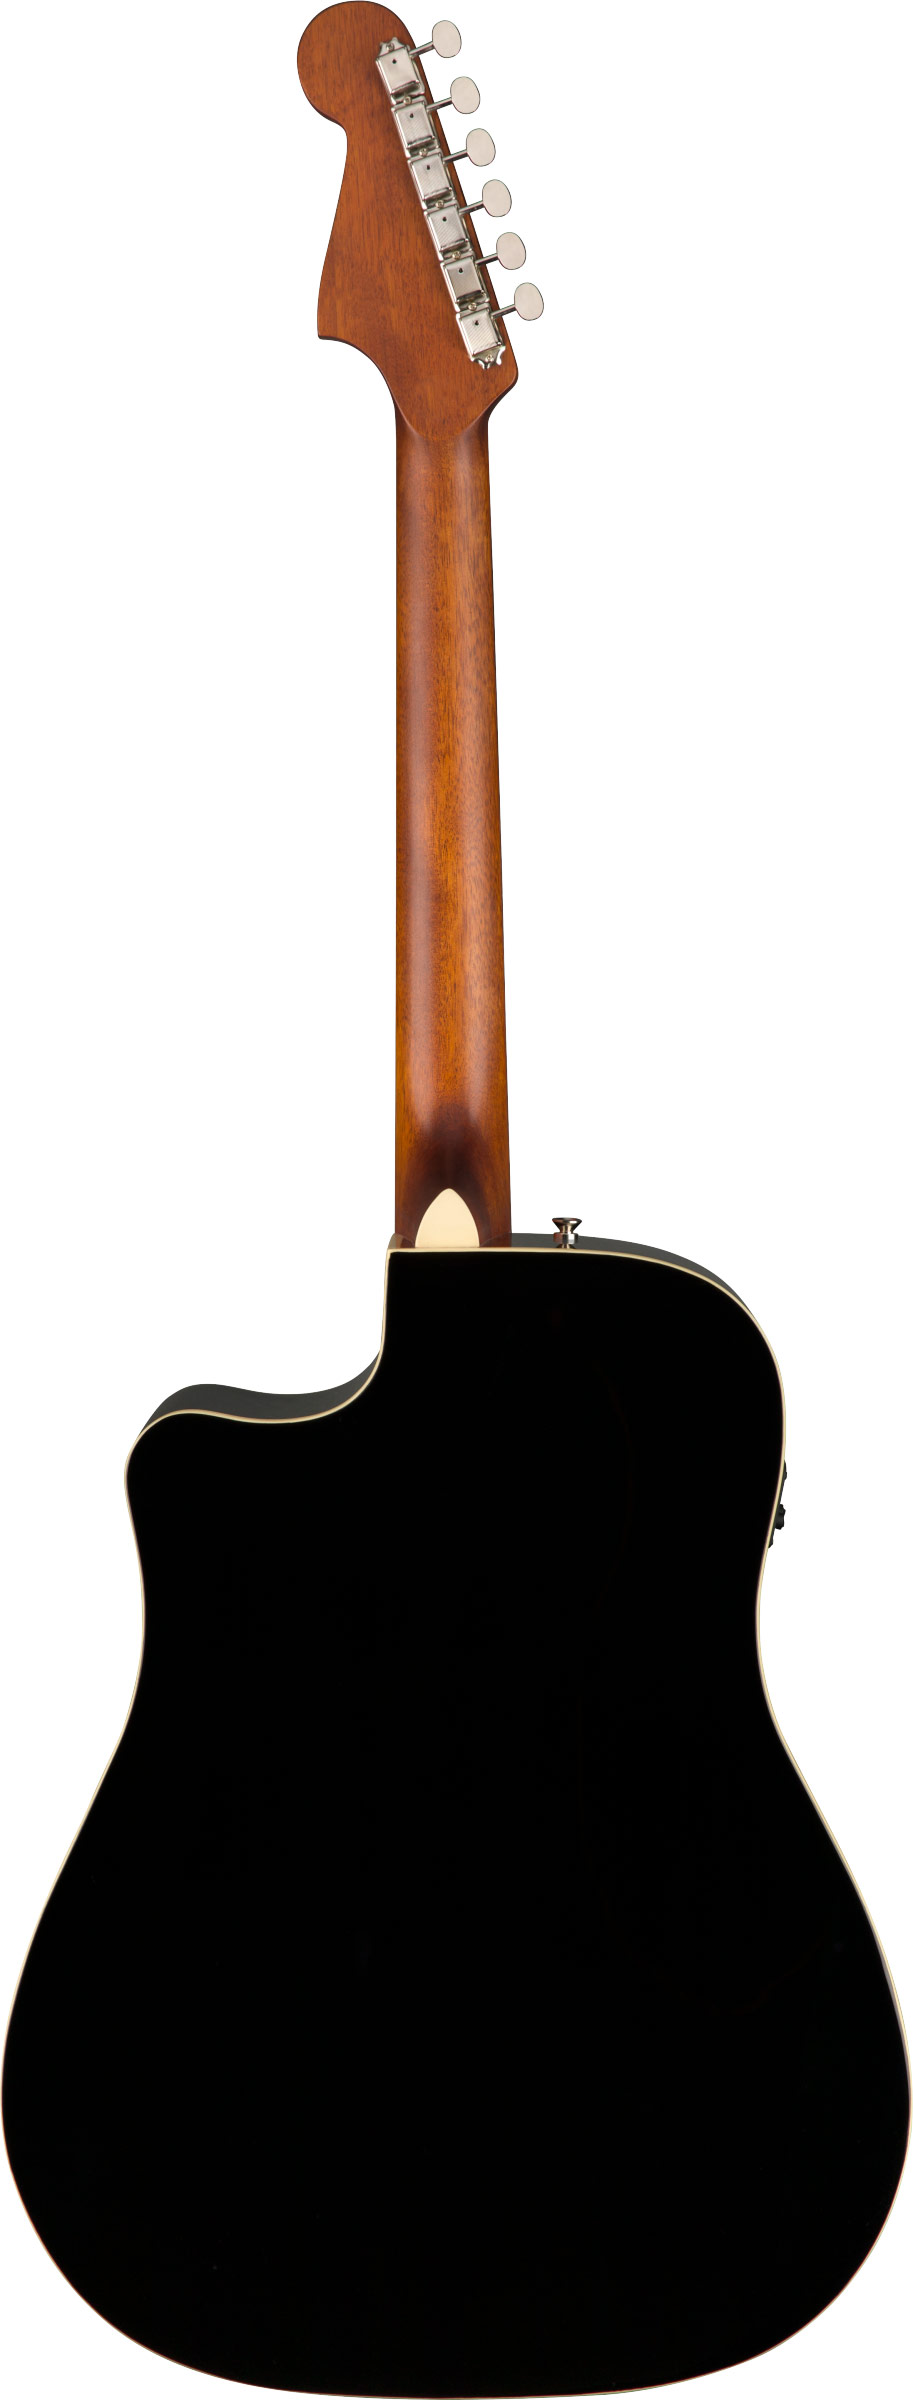 Fender California Series Redondo Player Jetty Black guitarguitar